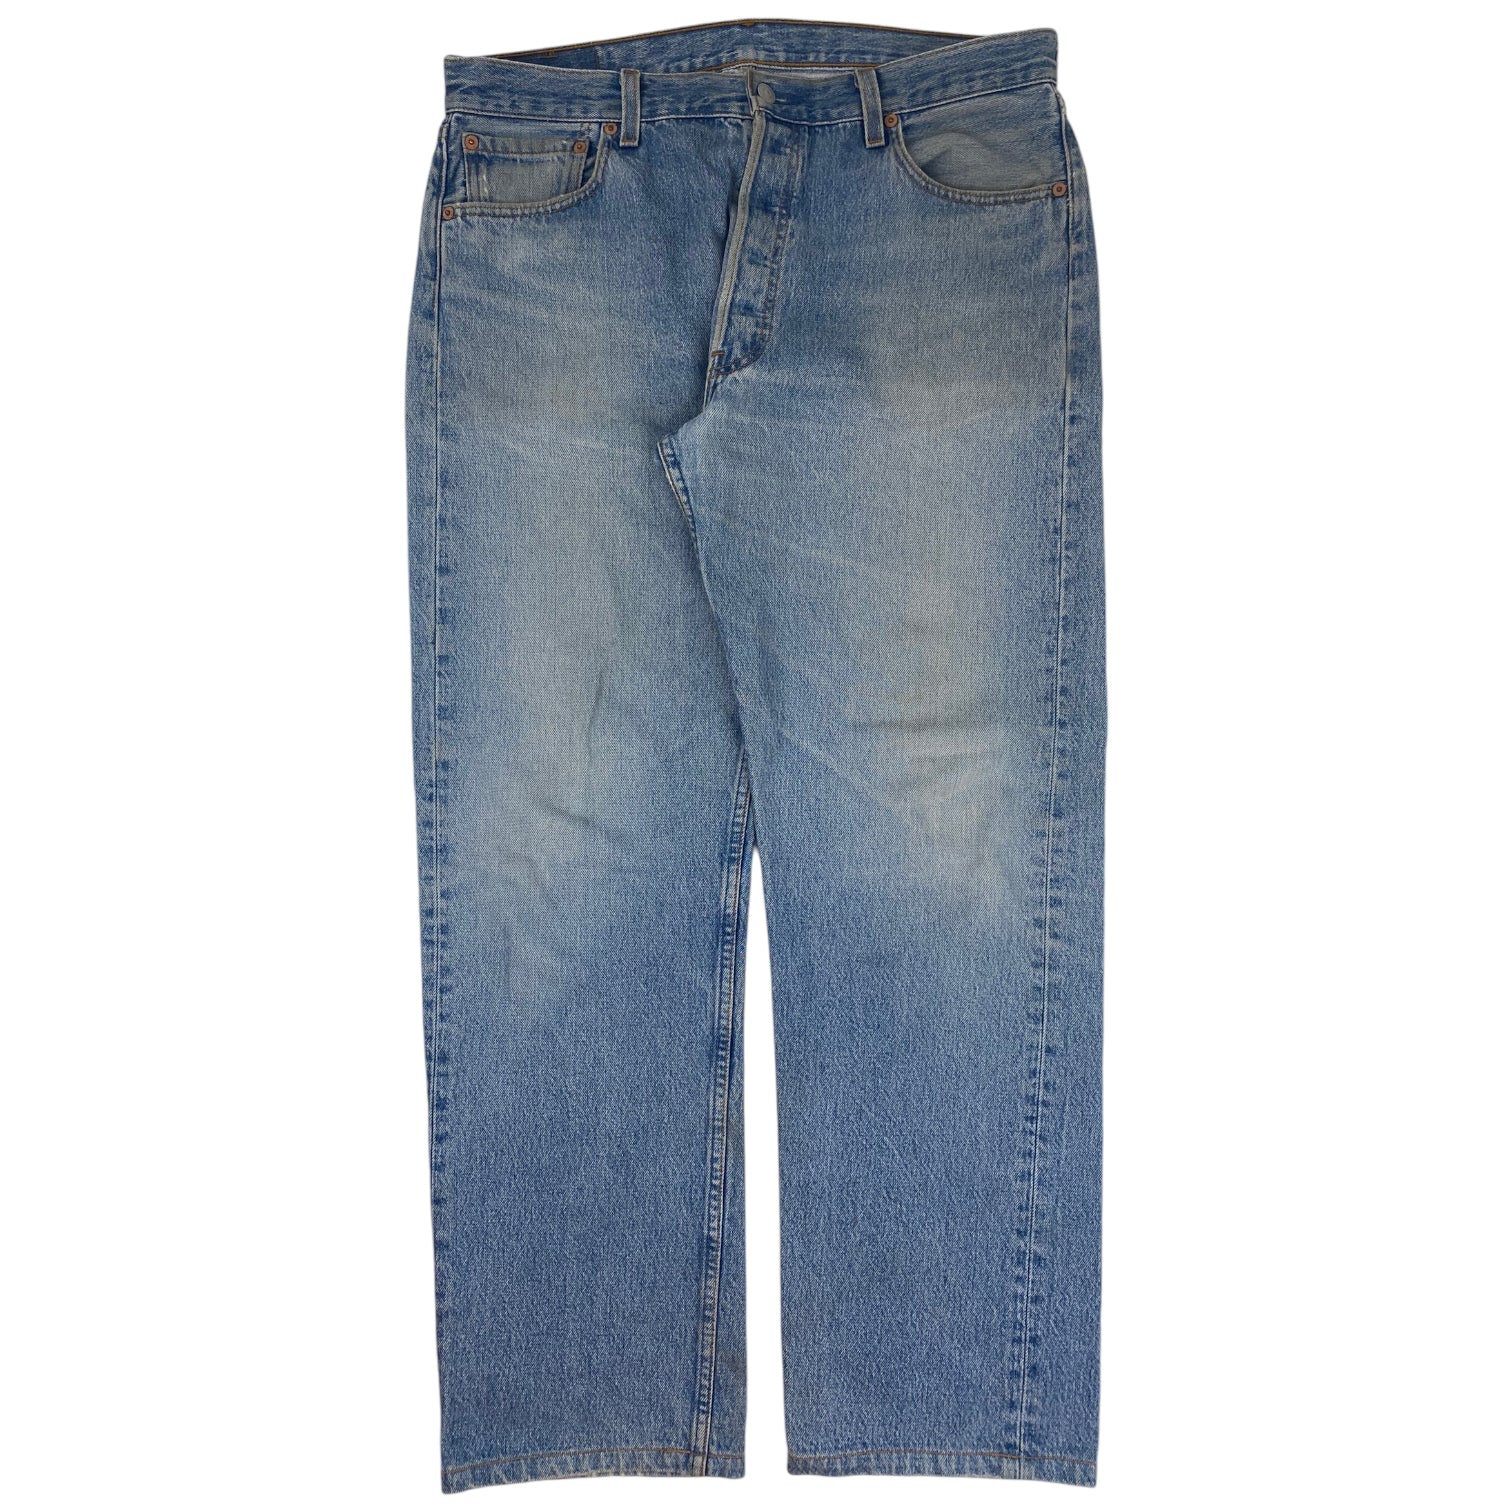 Vintage Levi’s 501s Denim Jeans Blue